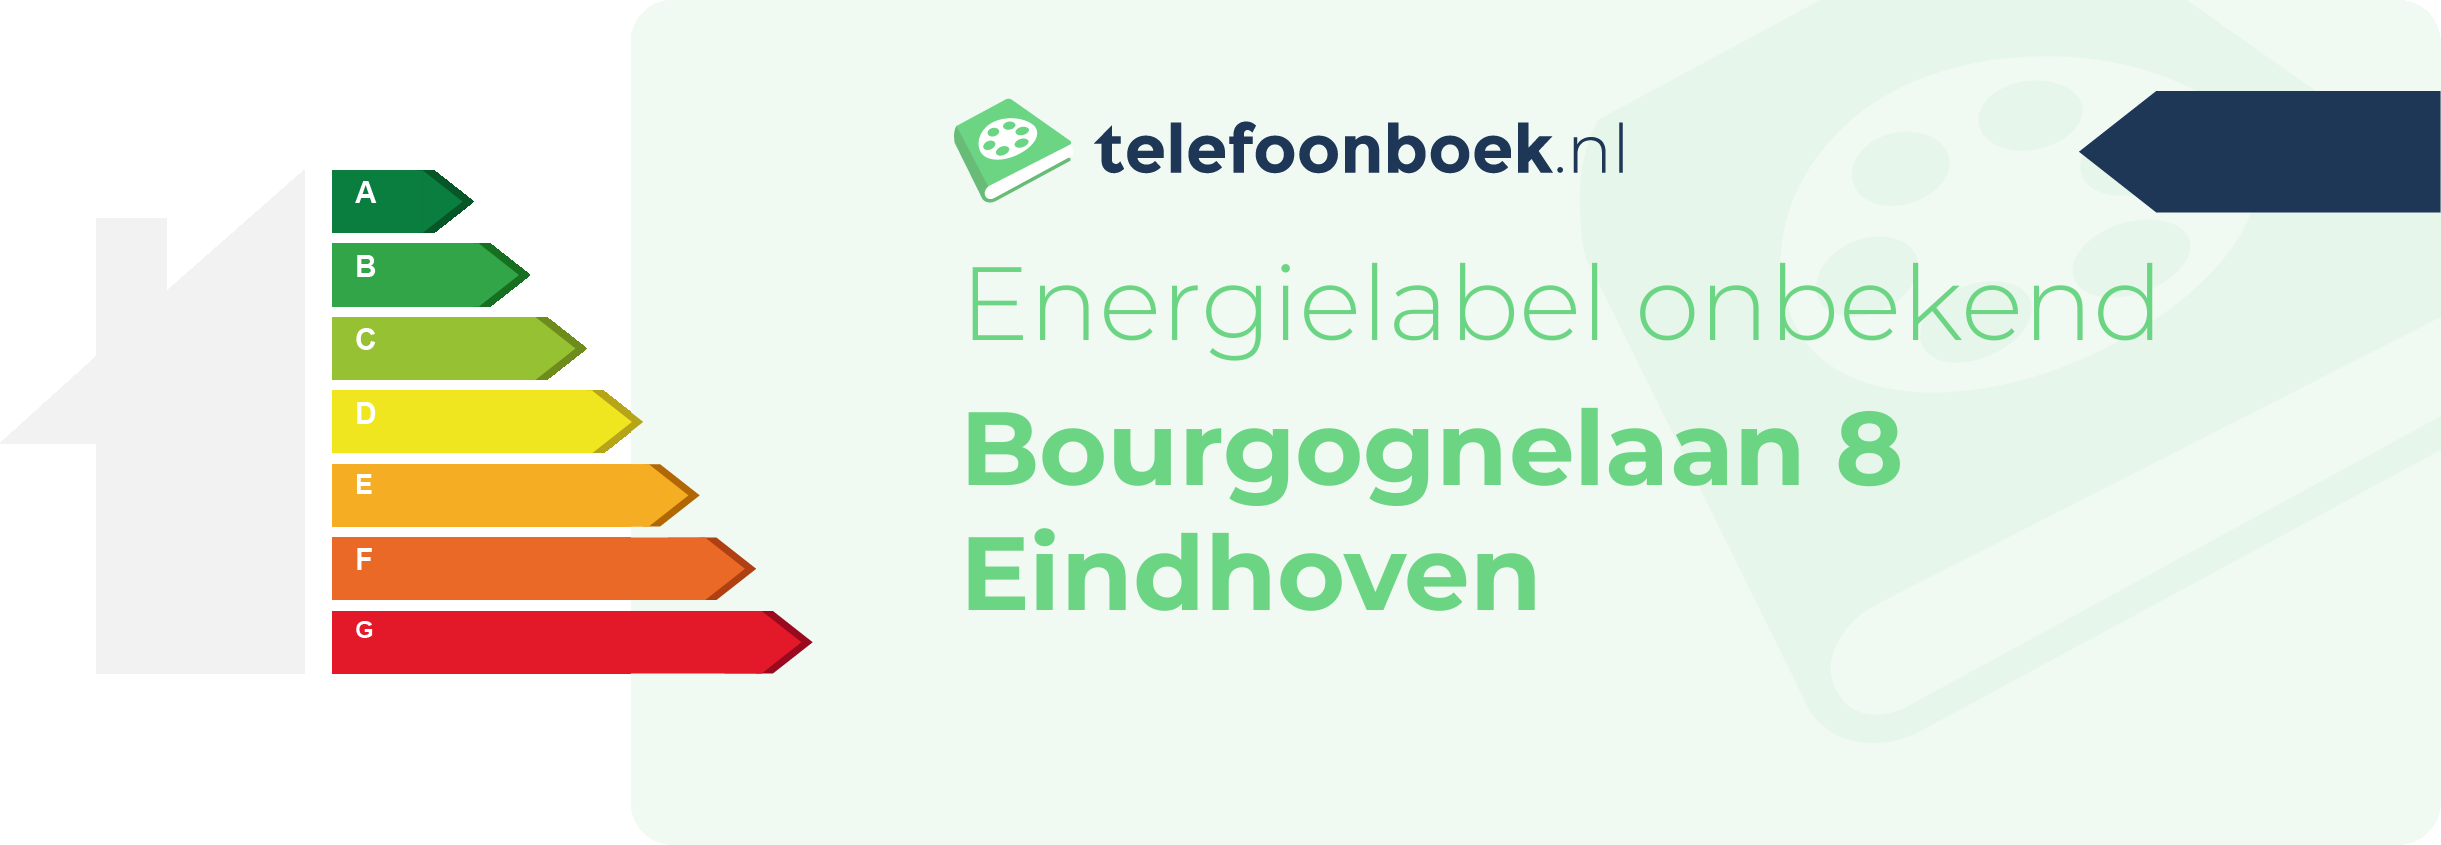 Energielabel Bourgognelaan 8 Eindhoven